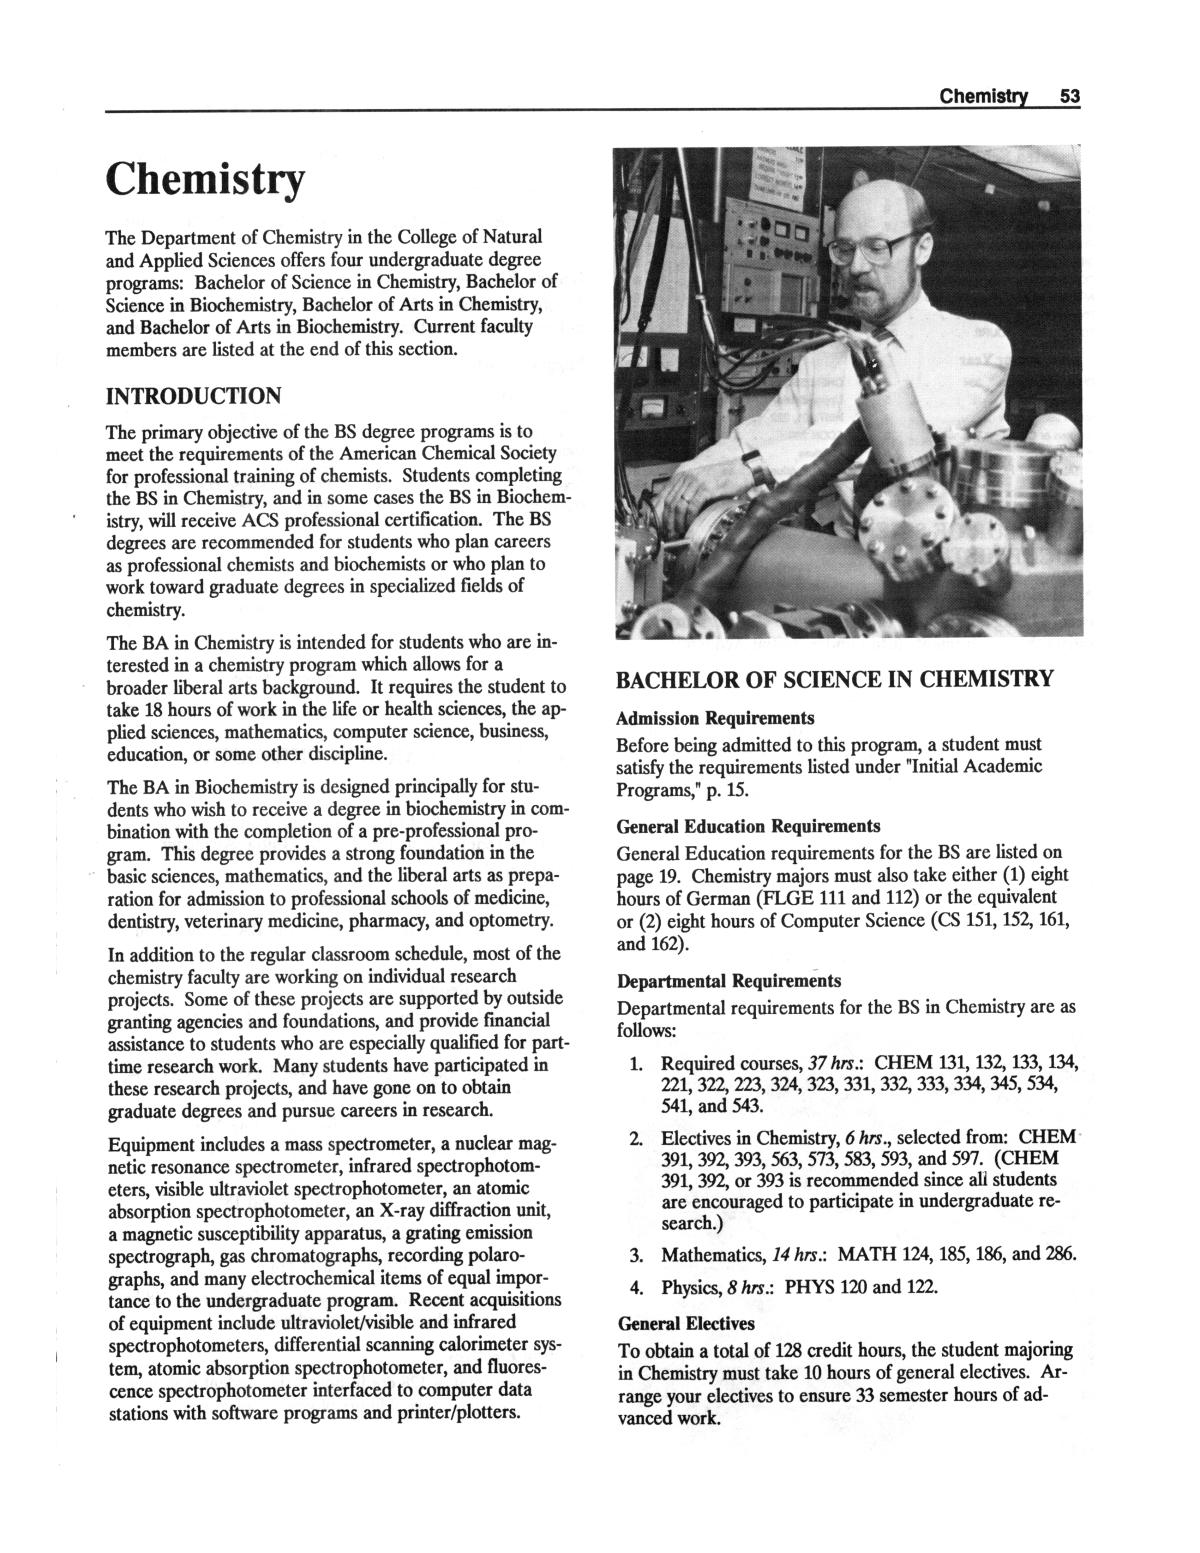 Catalog of Abilene Christian University, 1988-1989
                                                
                                                    53
                                                